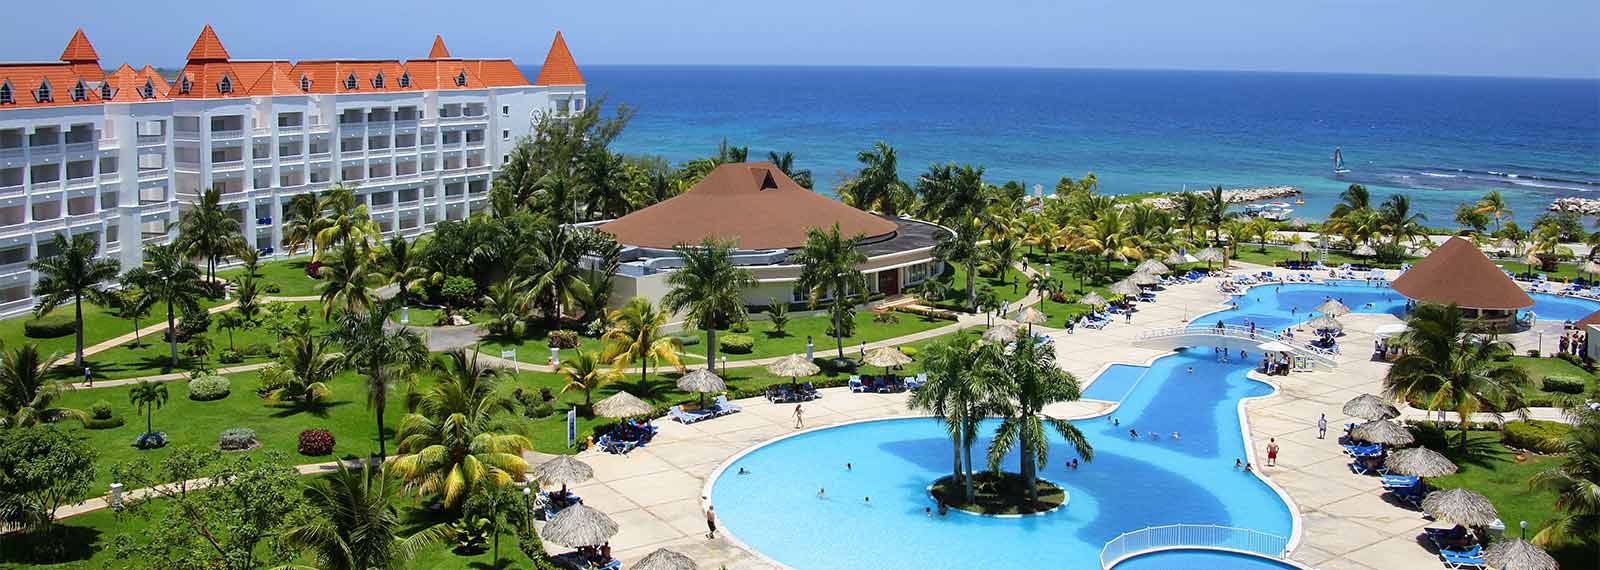 Bahia Principe Grand Jamaica – Hotéis e resorts Bahia Principe